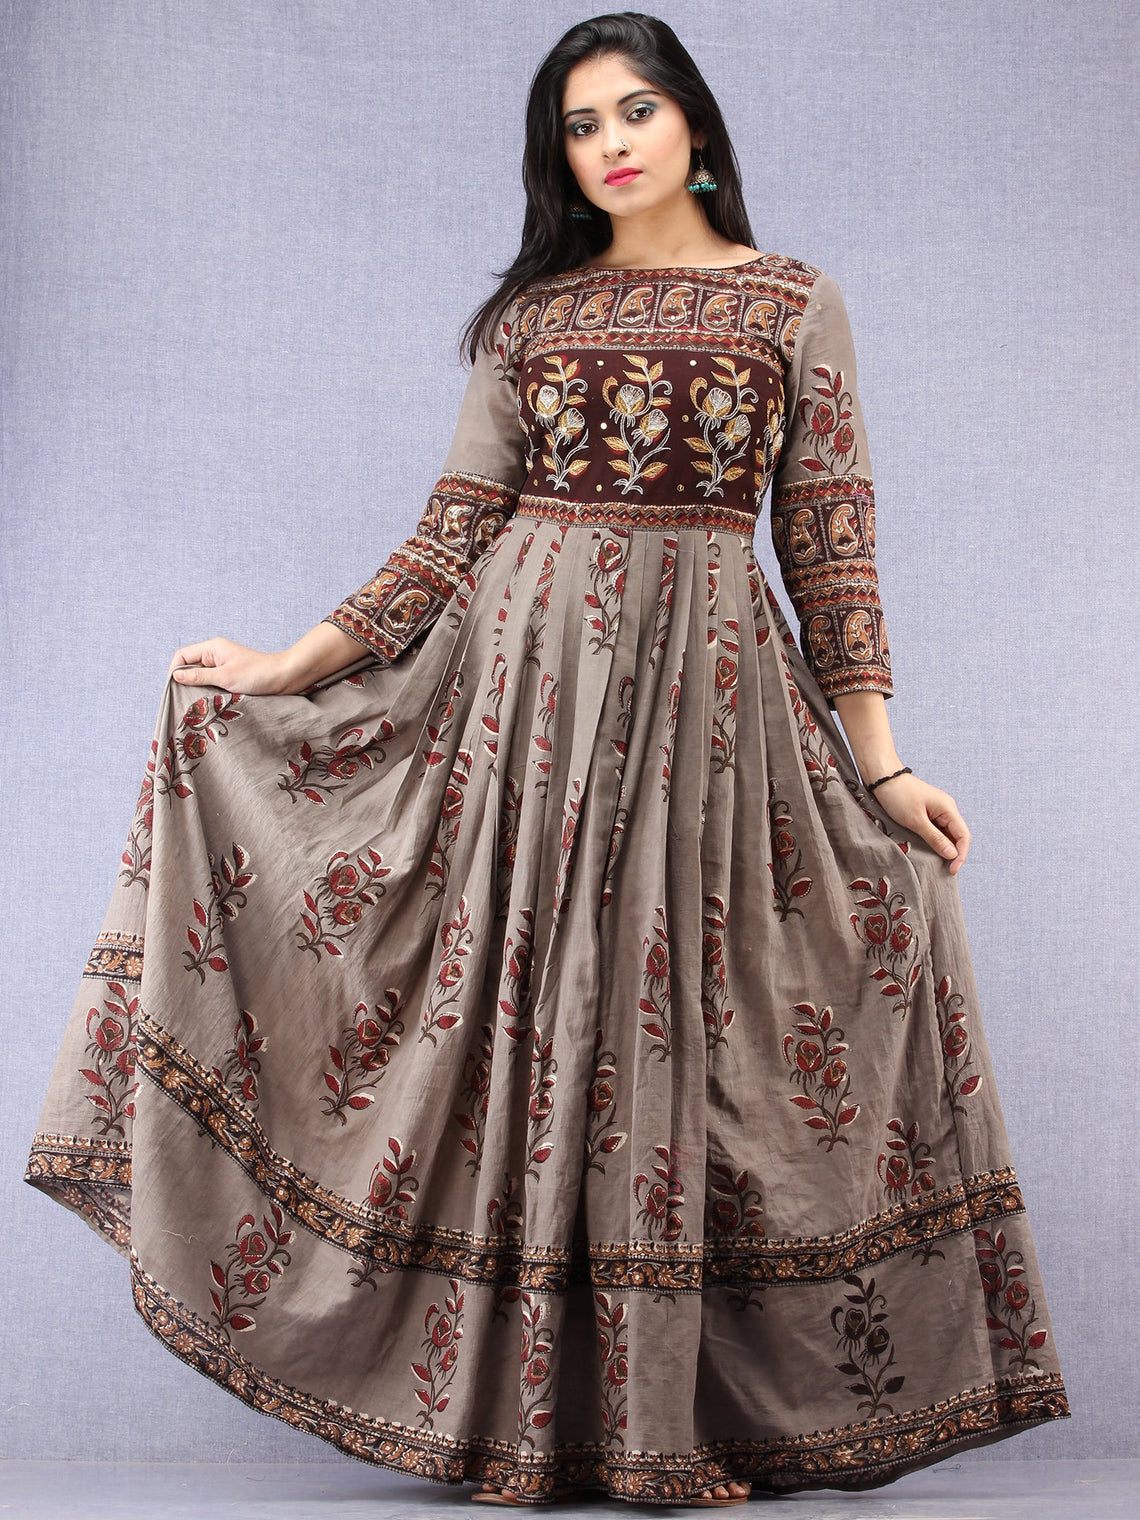 mughal female dress